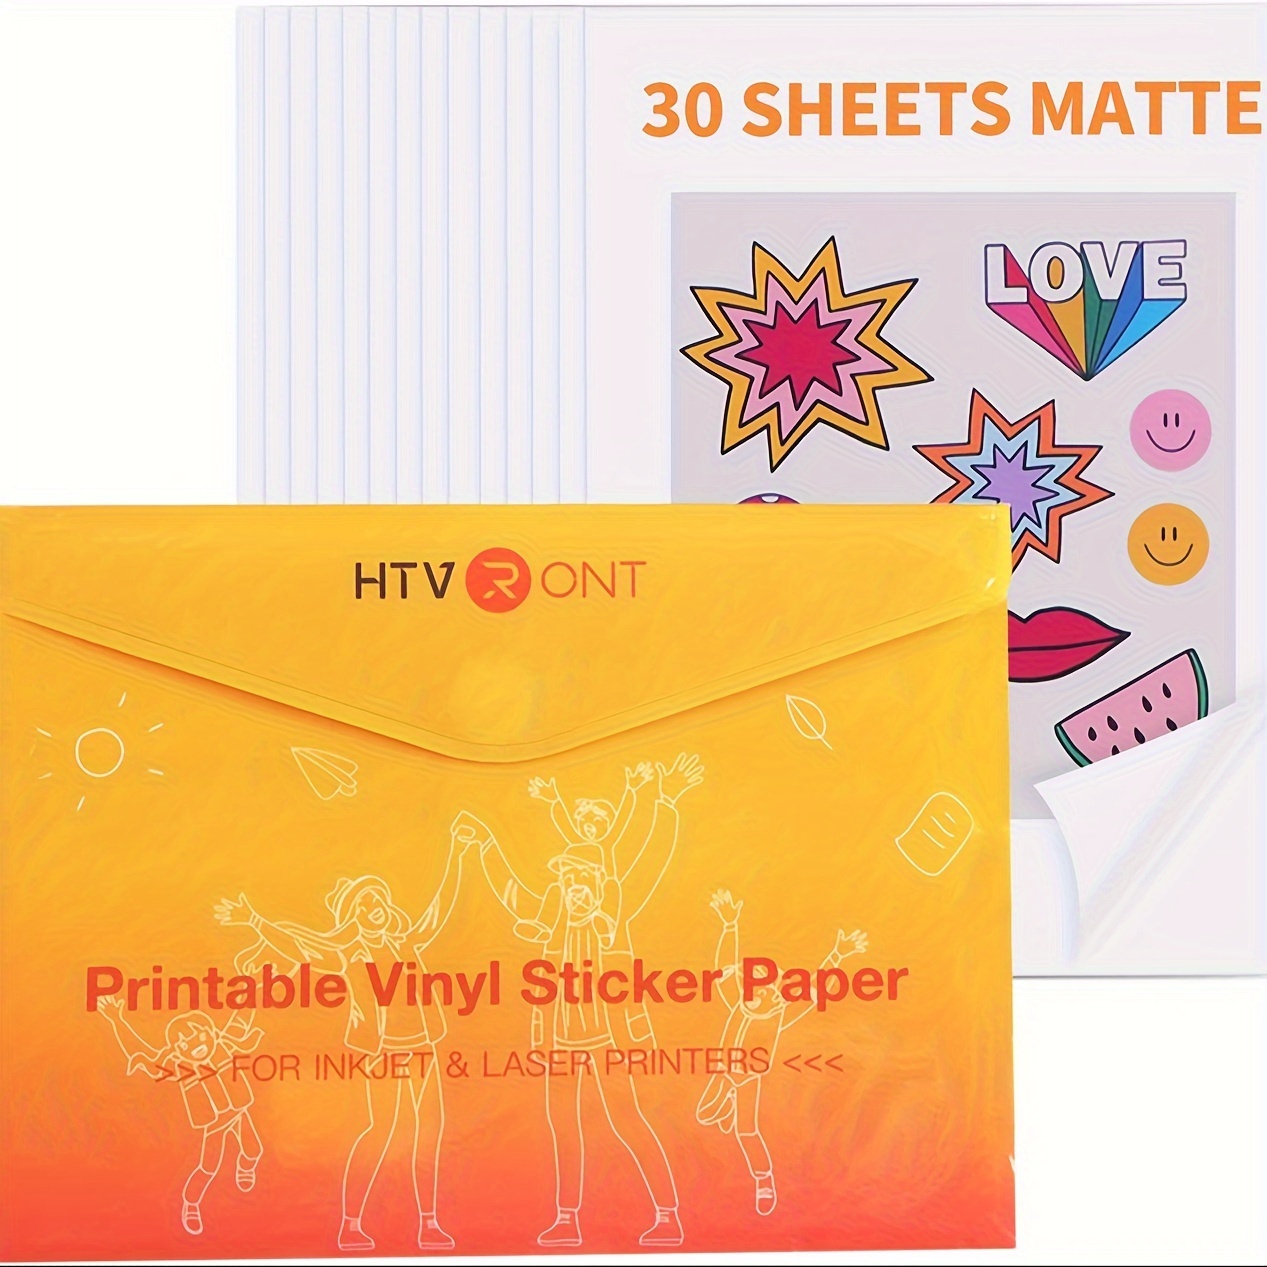  Printable Vinyl Sticker Paper for Laser Printer